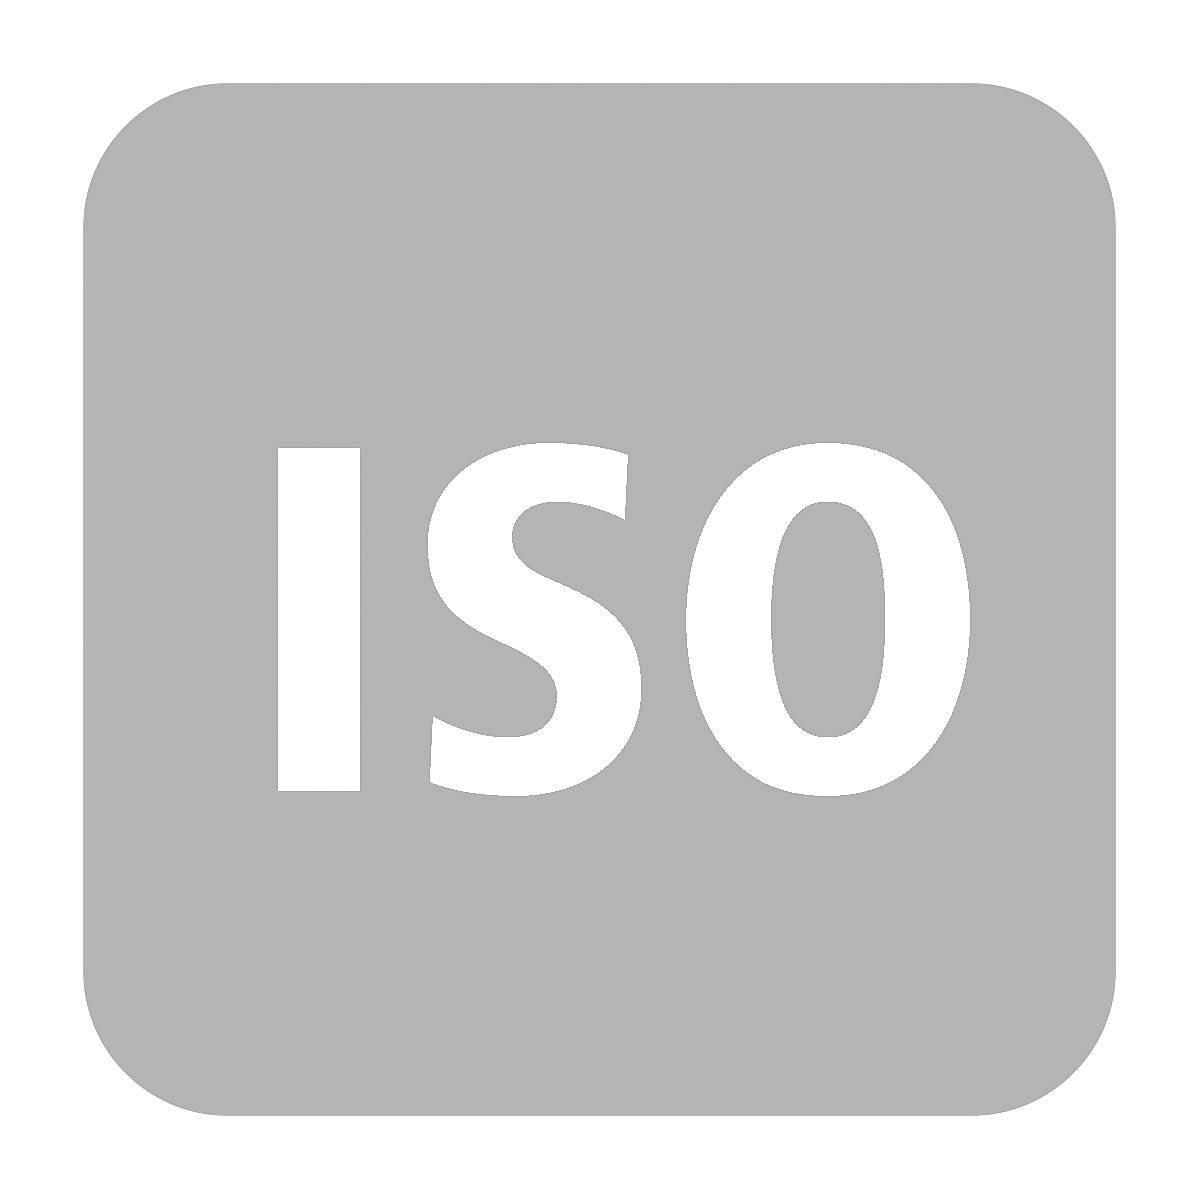 Doplačilo za ISO izvedbo